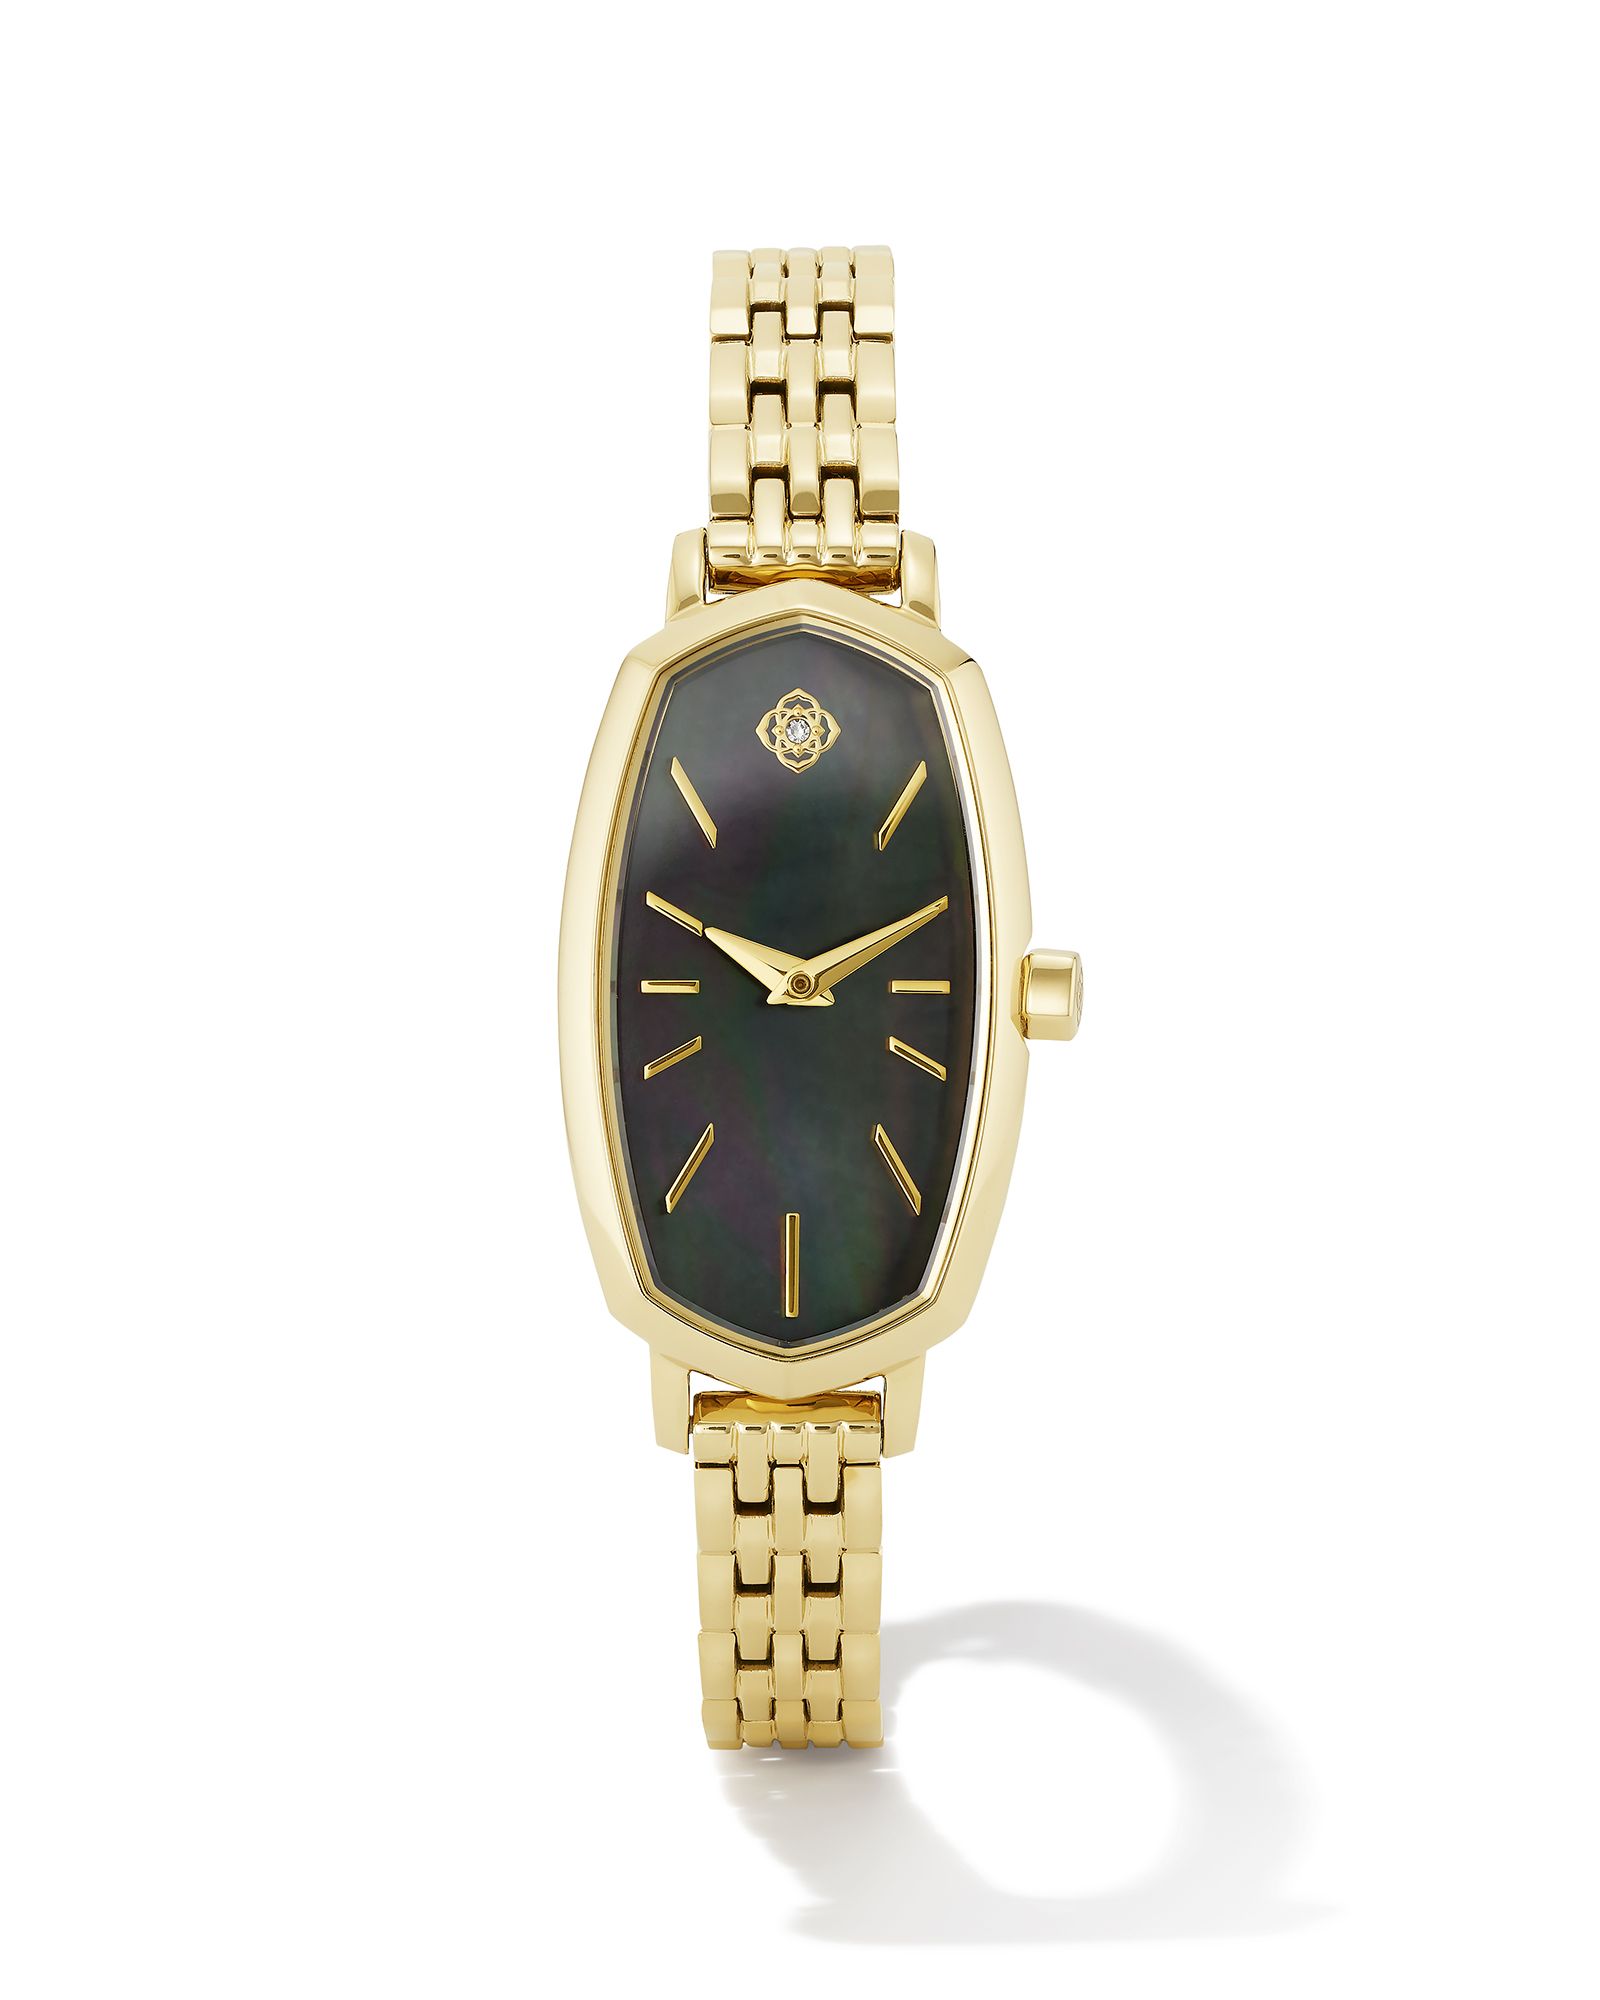 Elle Gold Tone Stainless Steel Watch in Black Mother-of-Pearl | Kendra Scott | Kendra Scott